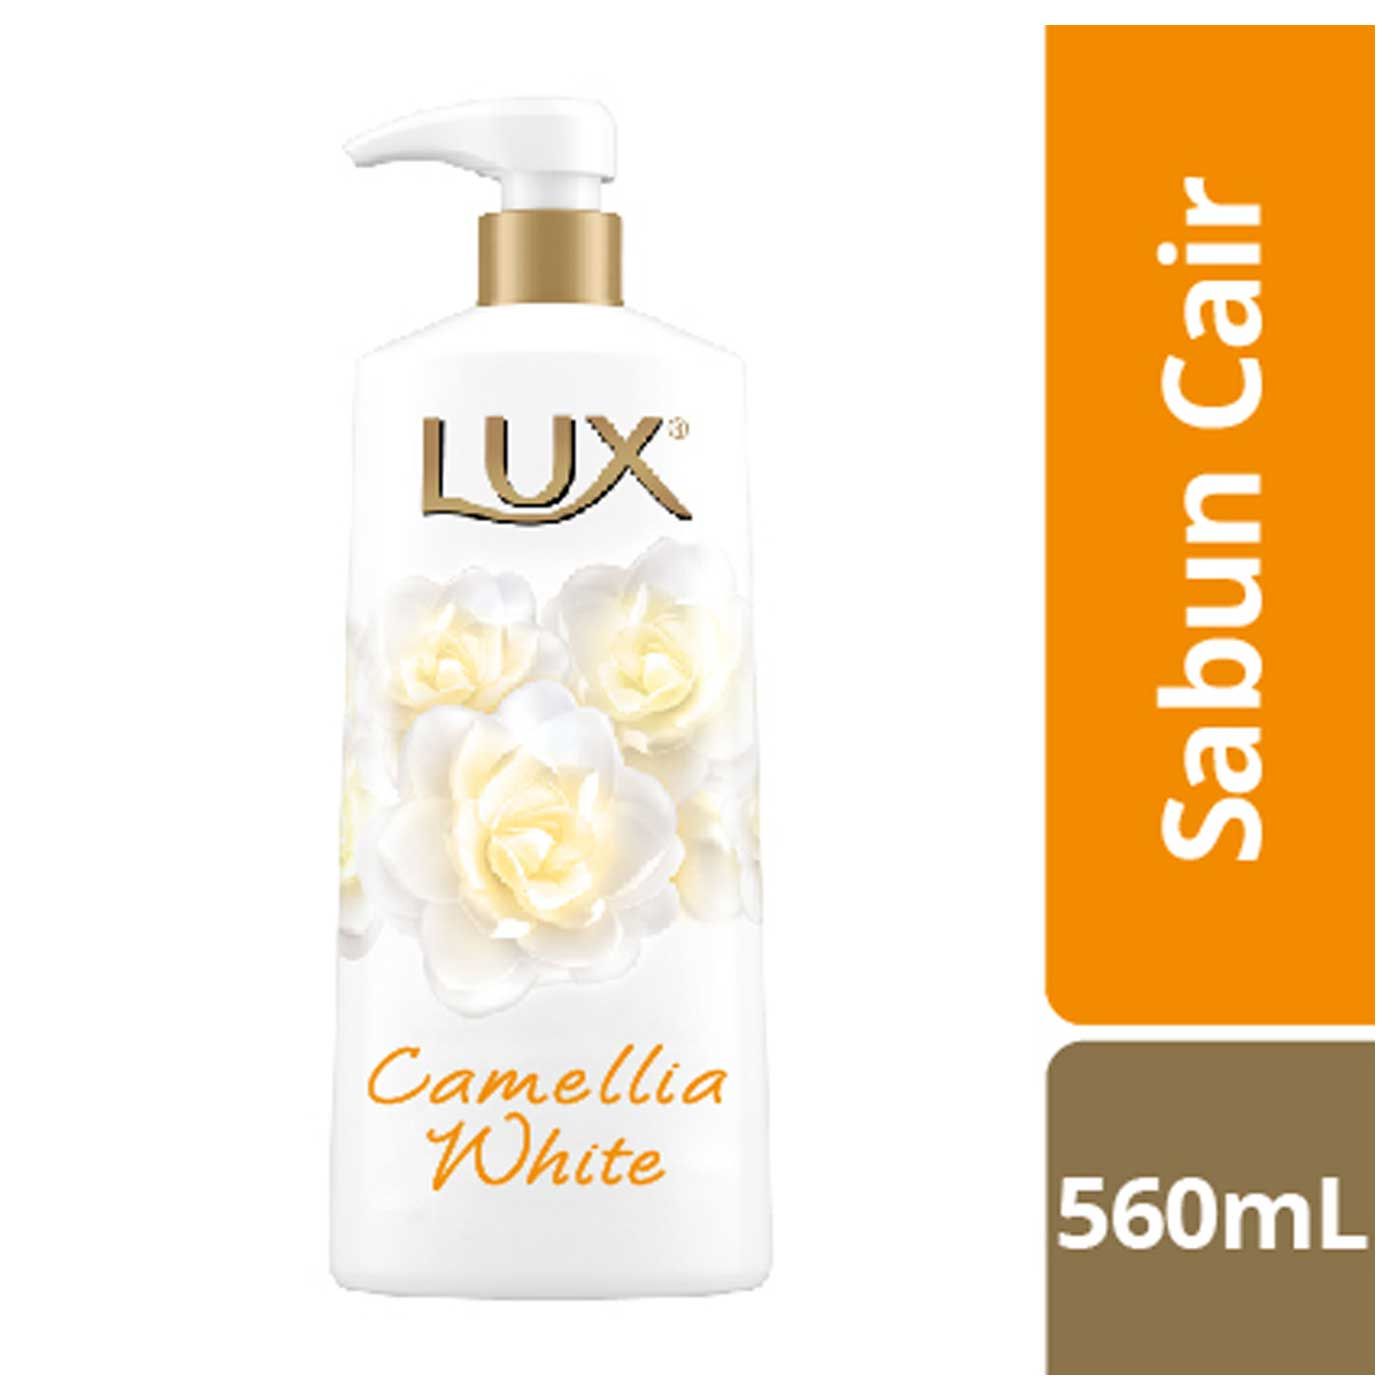 Lux Sabun Cair Camellia White Pump 560ml - 1